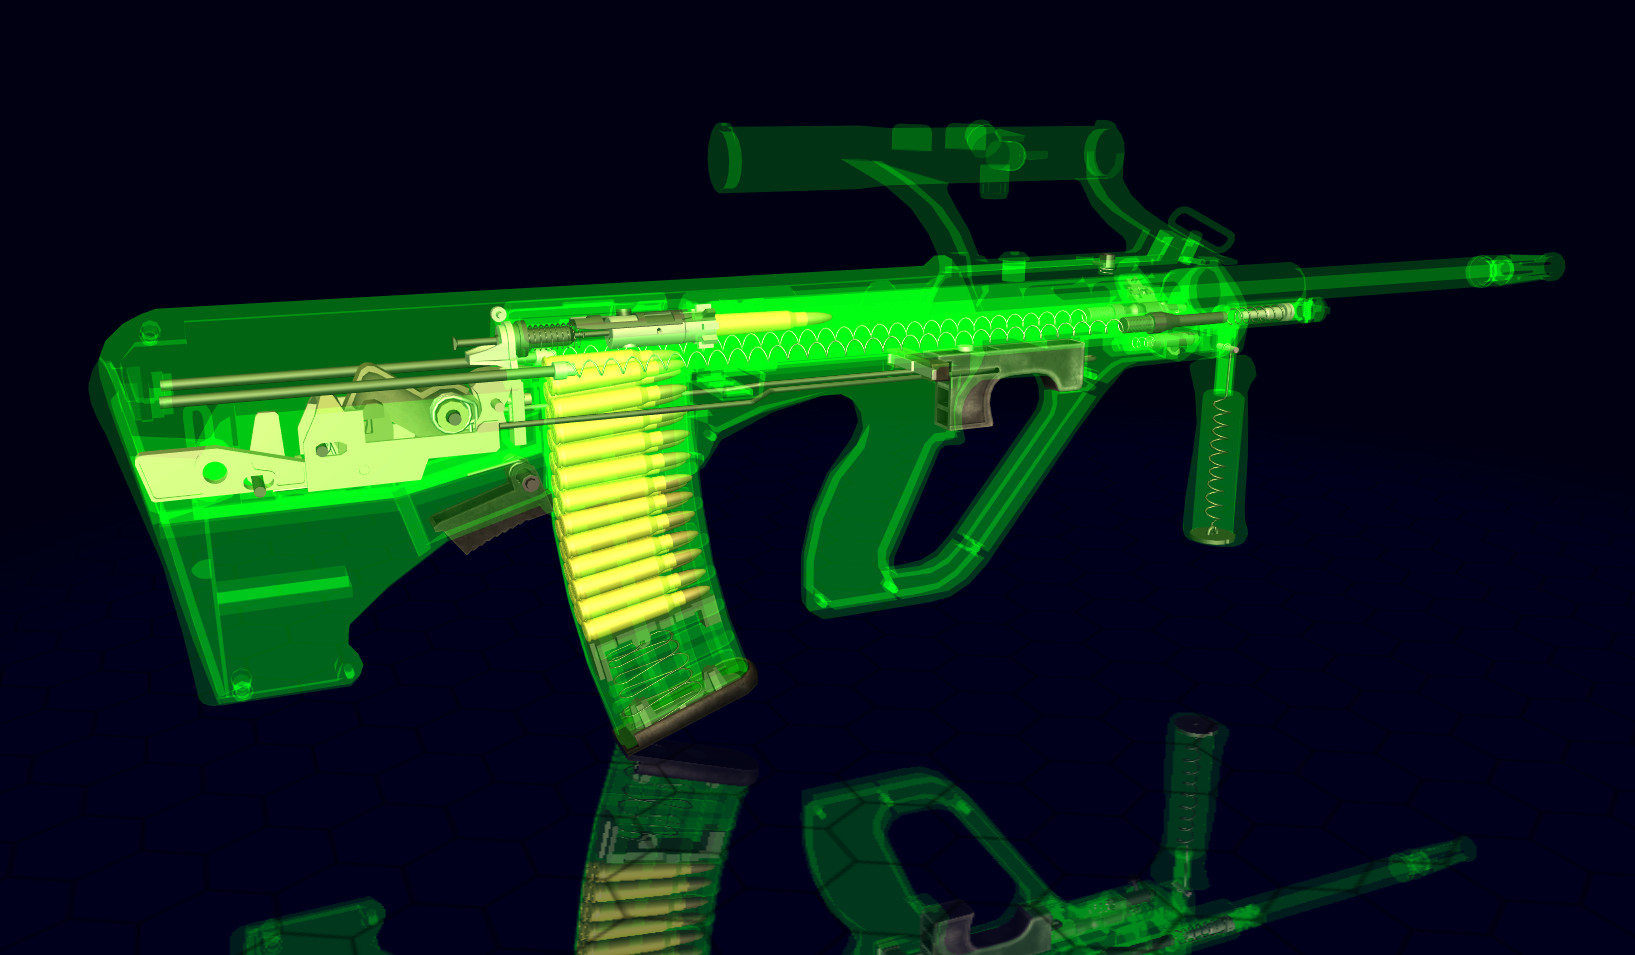 World of Guns: Assault Rifles Pack #1 Featured Screenshot #1